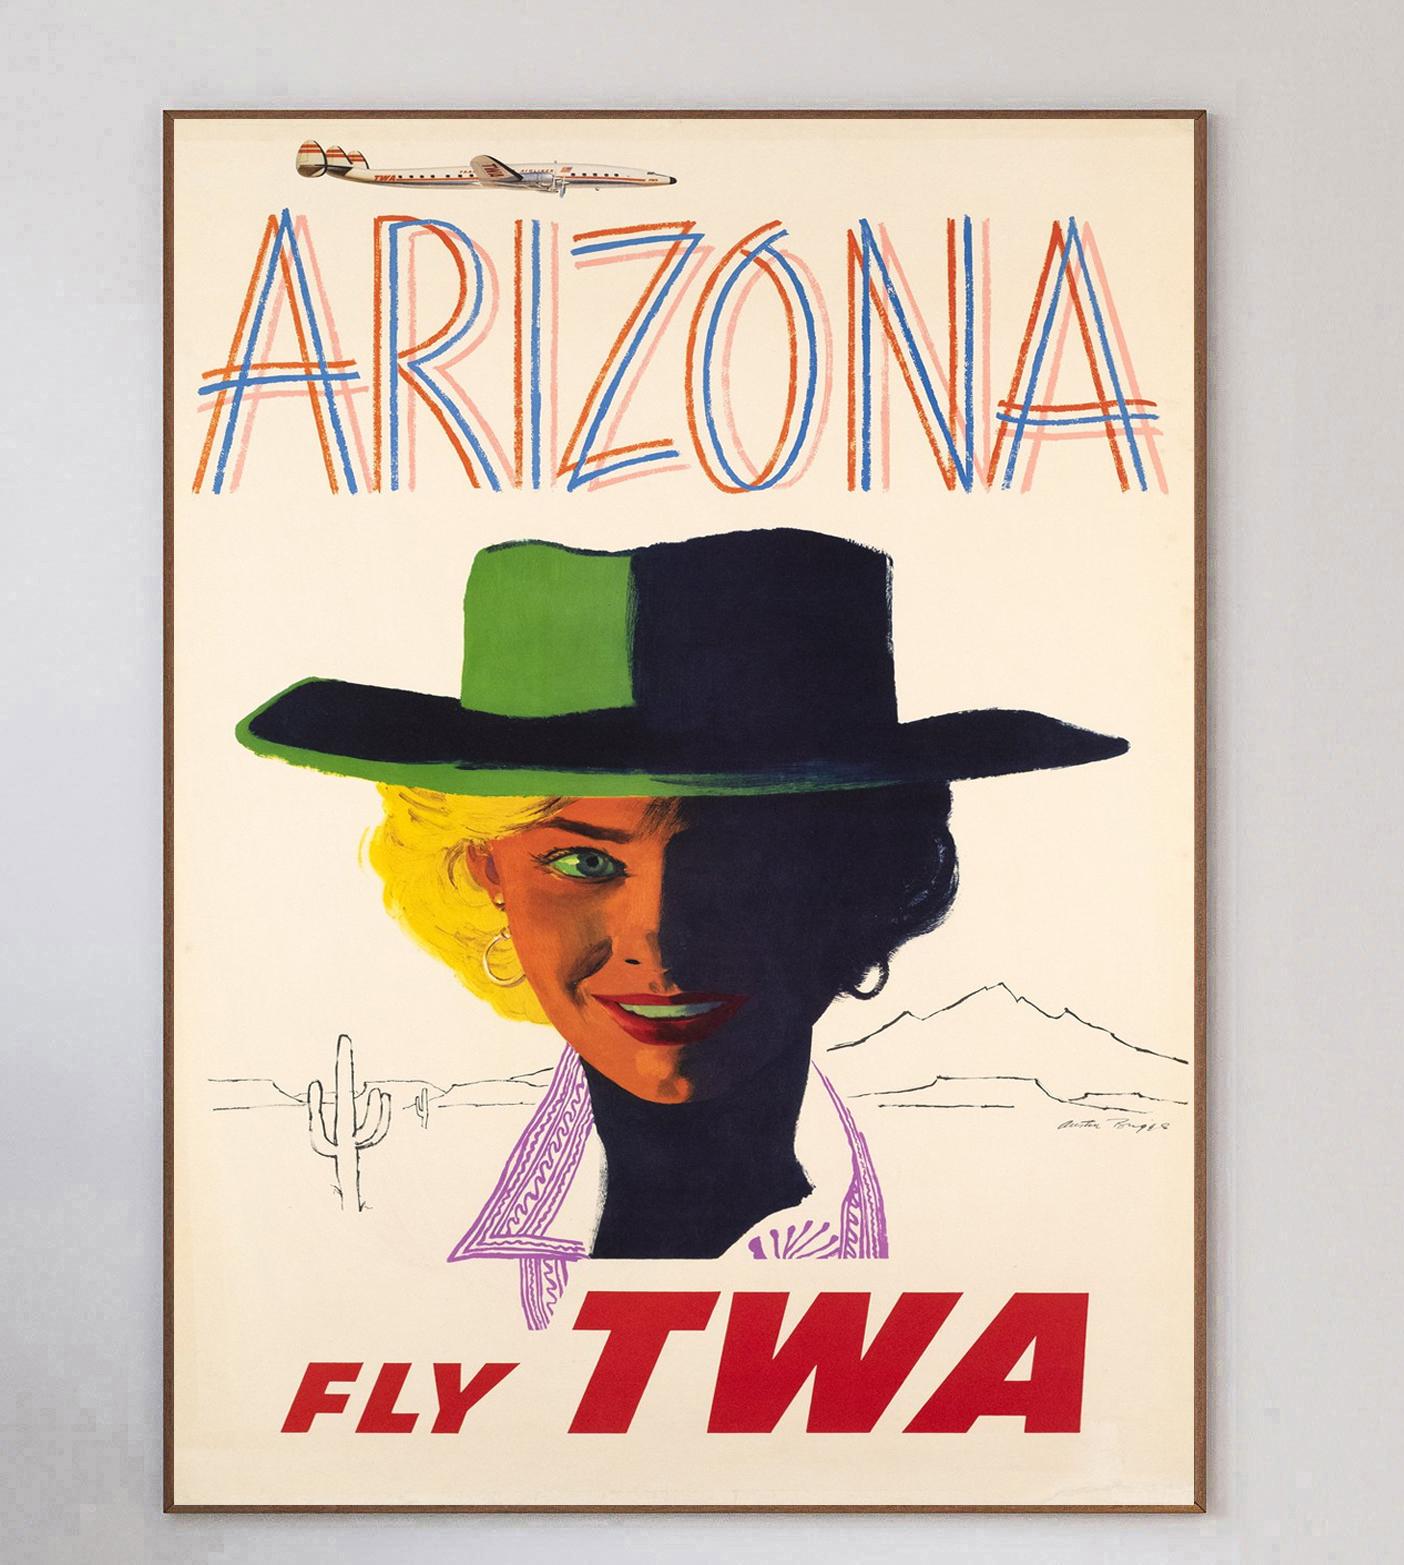 Cette affiche a été créée en 1960 pour la Trans World Airlines d'Howard Hughes afin de promouvoir ses liaisons avec l'Arizona, aux États-Unis. Illustré par l'artiste et caricaturiste américain Austin Briggs, ce design présente une image brillante